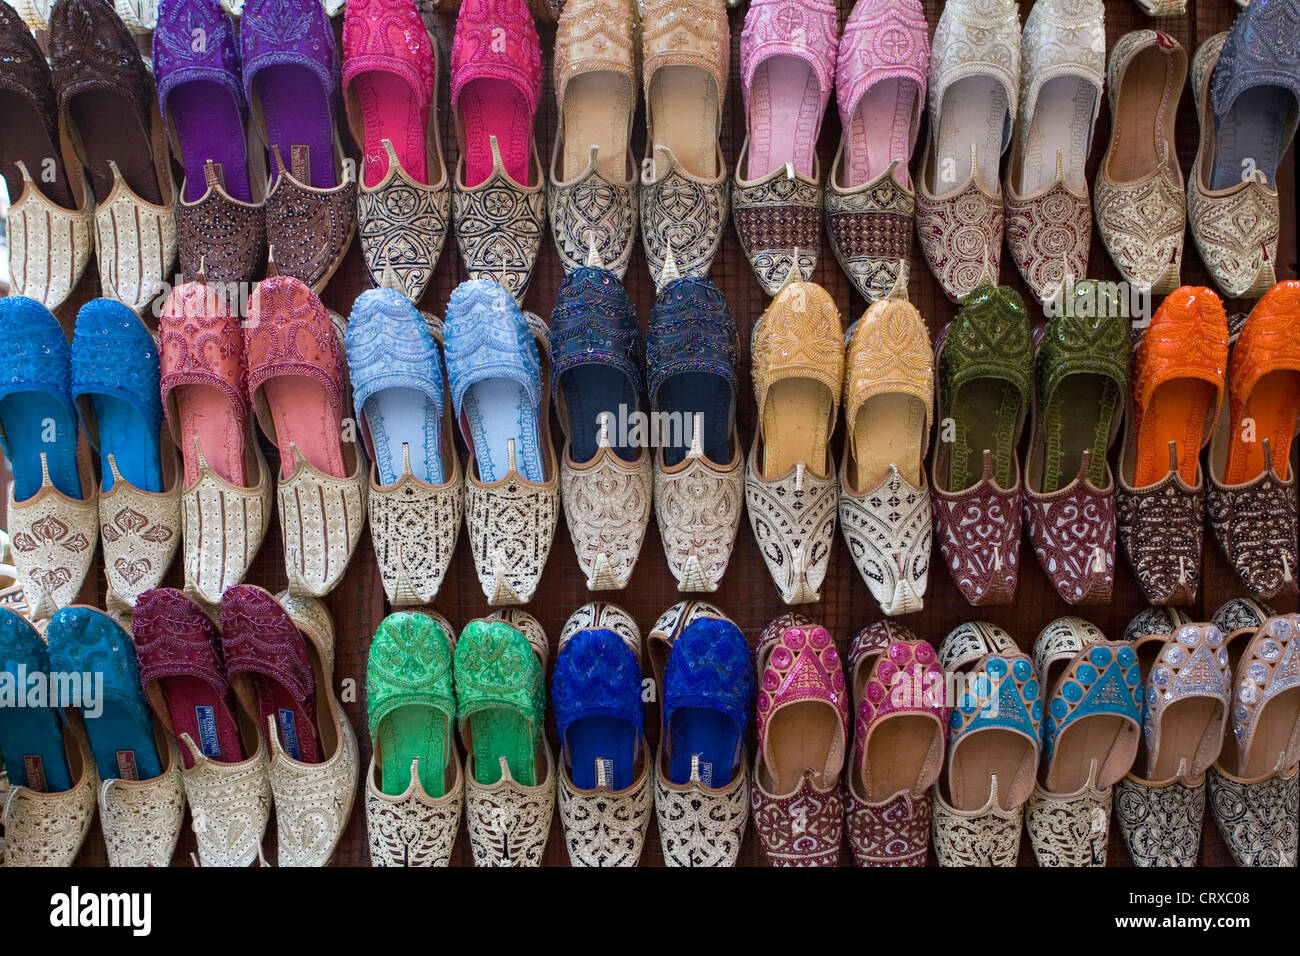 khussa slippers